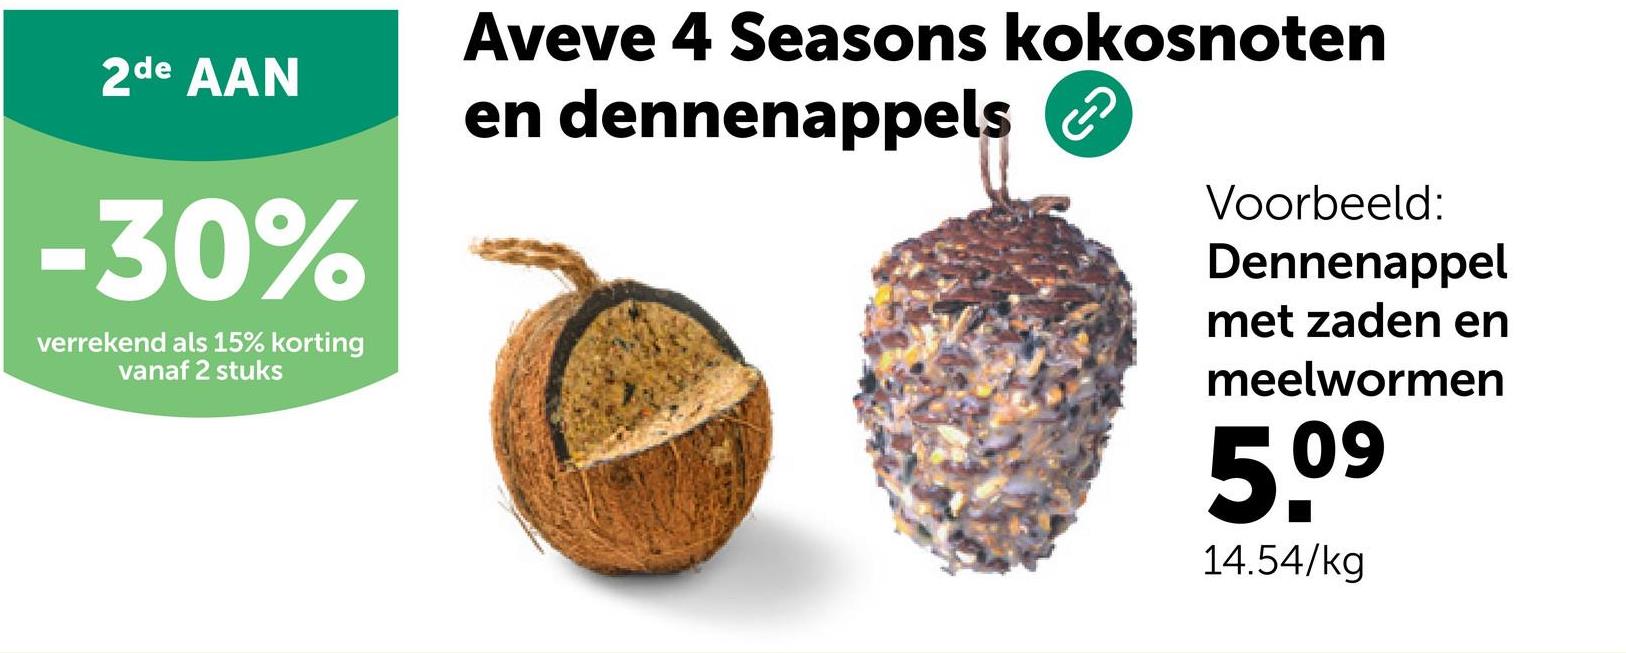 2de AAN
-30%
verrekend als 15% korting
vanaf 2 stuks
Aveve 4 Seasons kokosnoten
en dennenappels
Voorbeeld:
Dennenappel
met zaden en
meelwormen
5.⁰⁹
09
14.54/kg